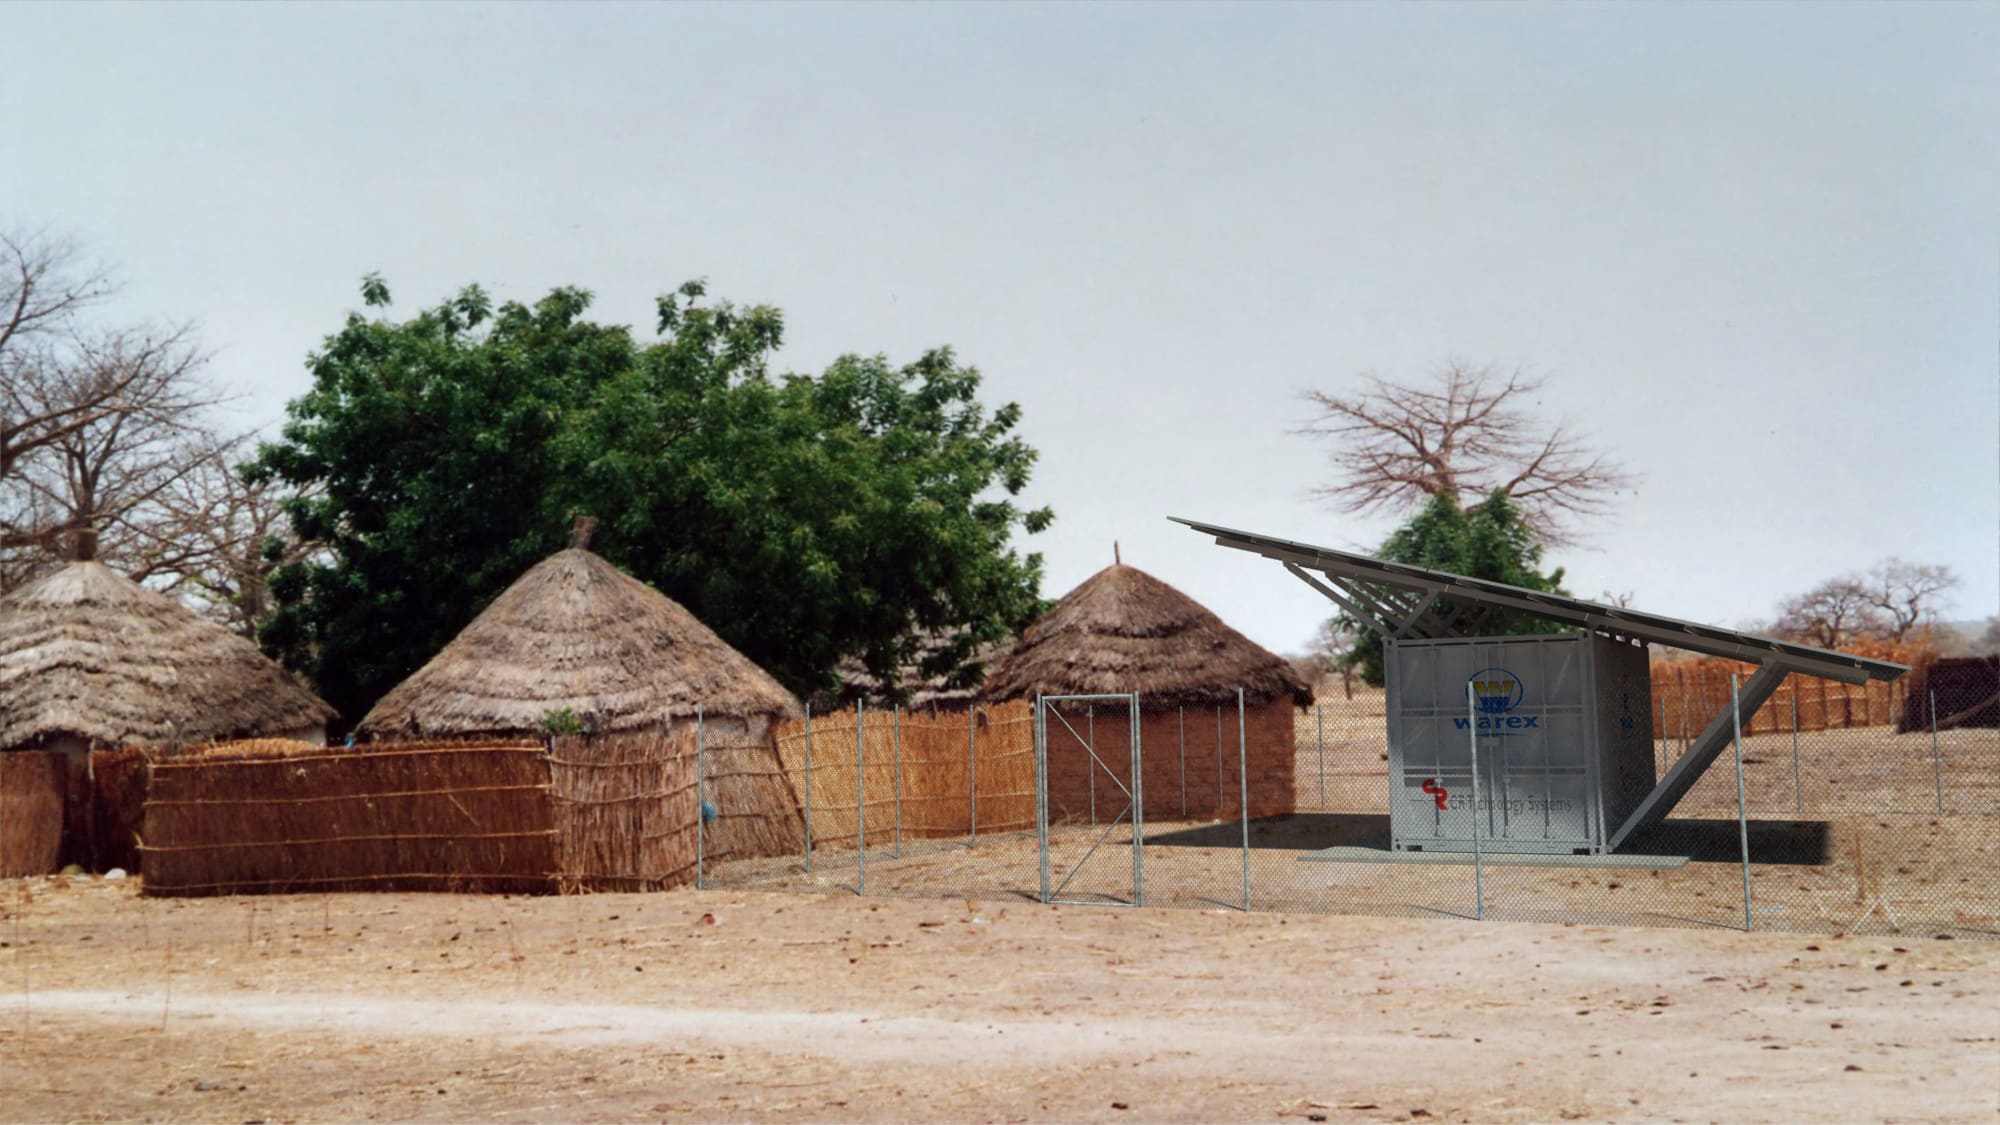 Sistema fotovoltaico en areas rurales, Costa de Marfil